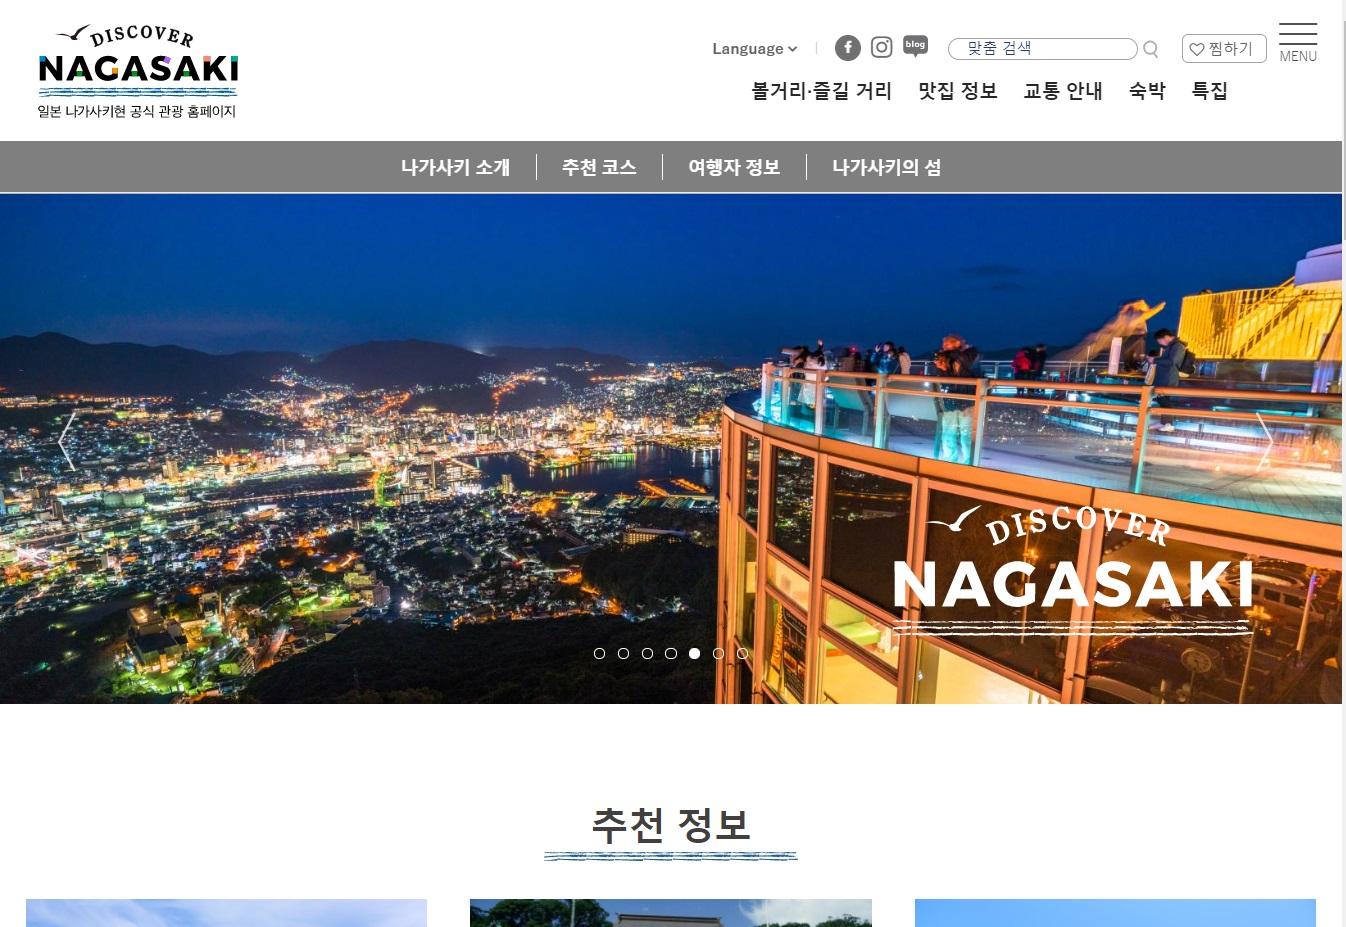 신착정보－ 나가사키현 공식 관광 홈페이지 ‘Discover Nagasaki’ 를 리뉴얼했습니다.-1